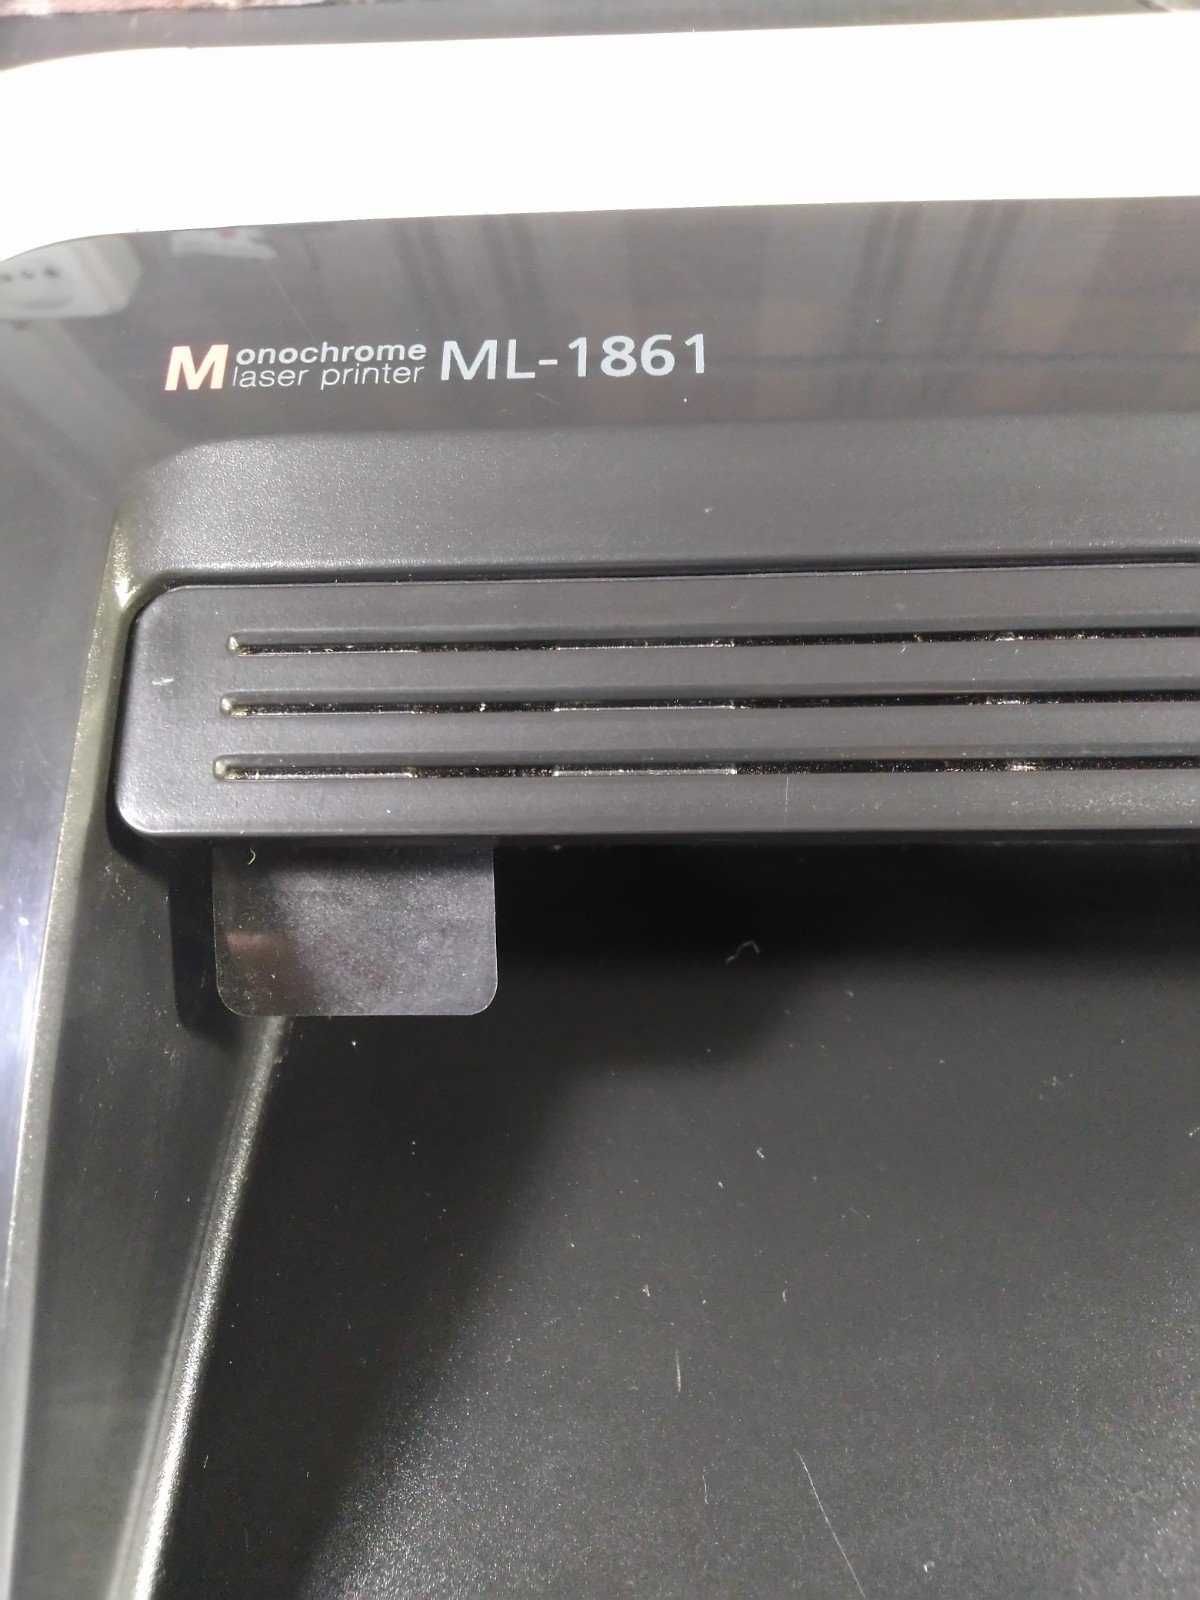 Продам лазерний принтер Samsung ML-1861 у доброму стані